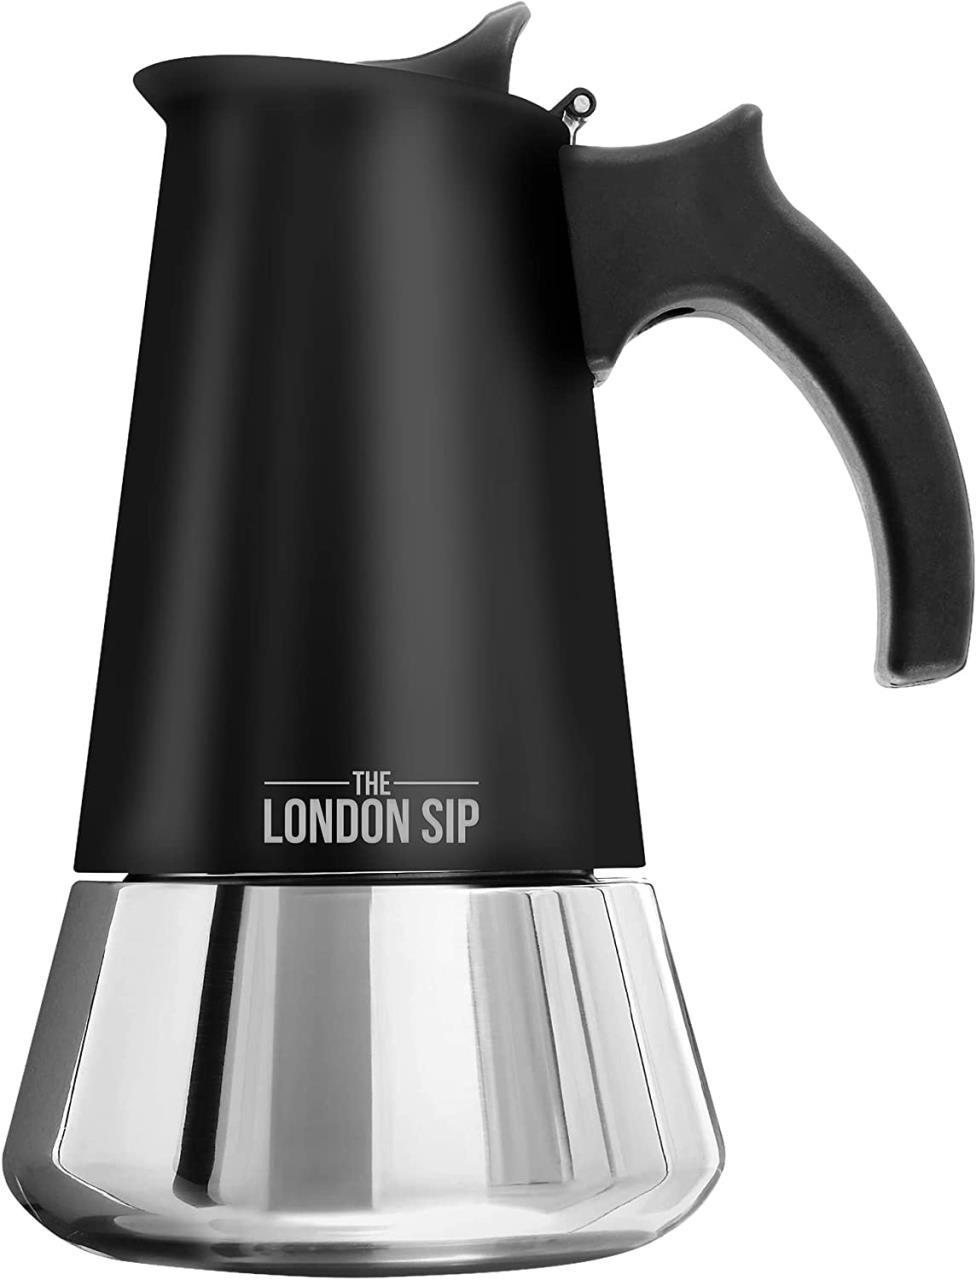 verhaal Catastrofaal Haalbaarheid Escali London Sip Stainless Steel Stovetop Espresso Coffee Maker 10 Cup  Black - Yeager's Sporting Goods